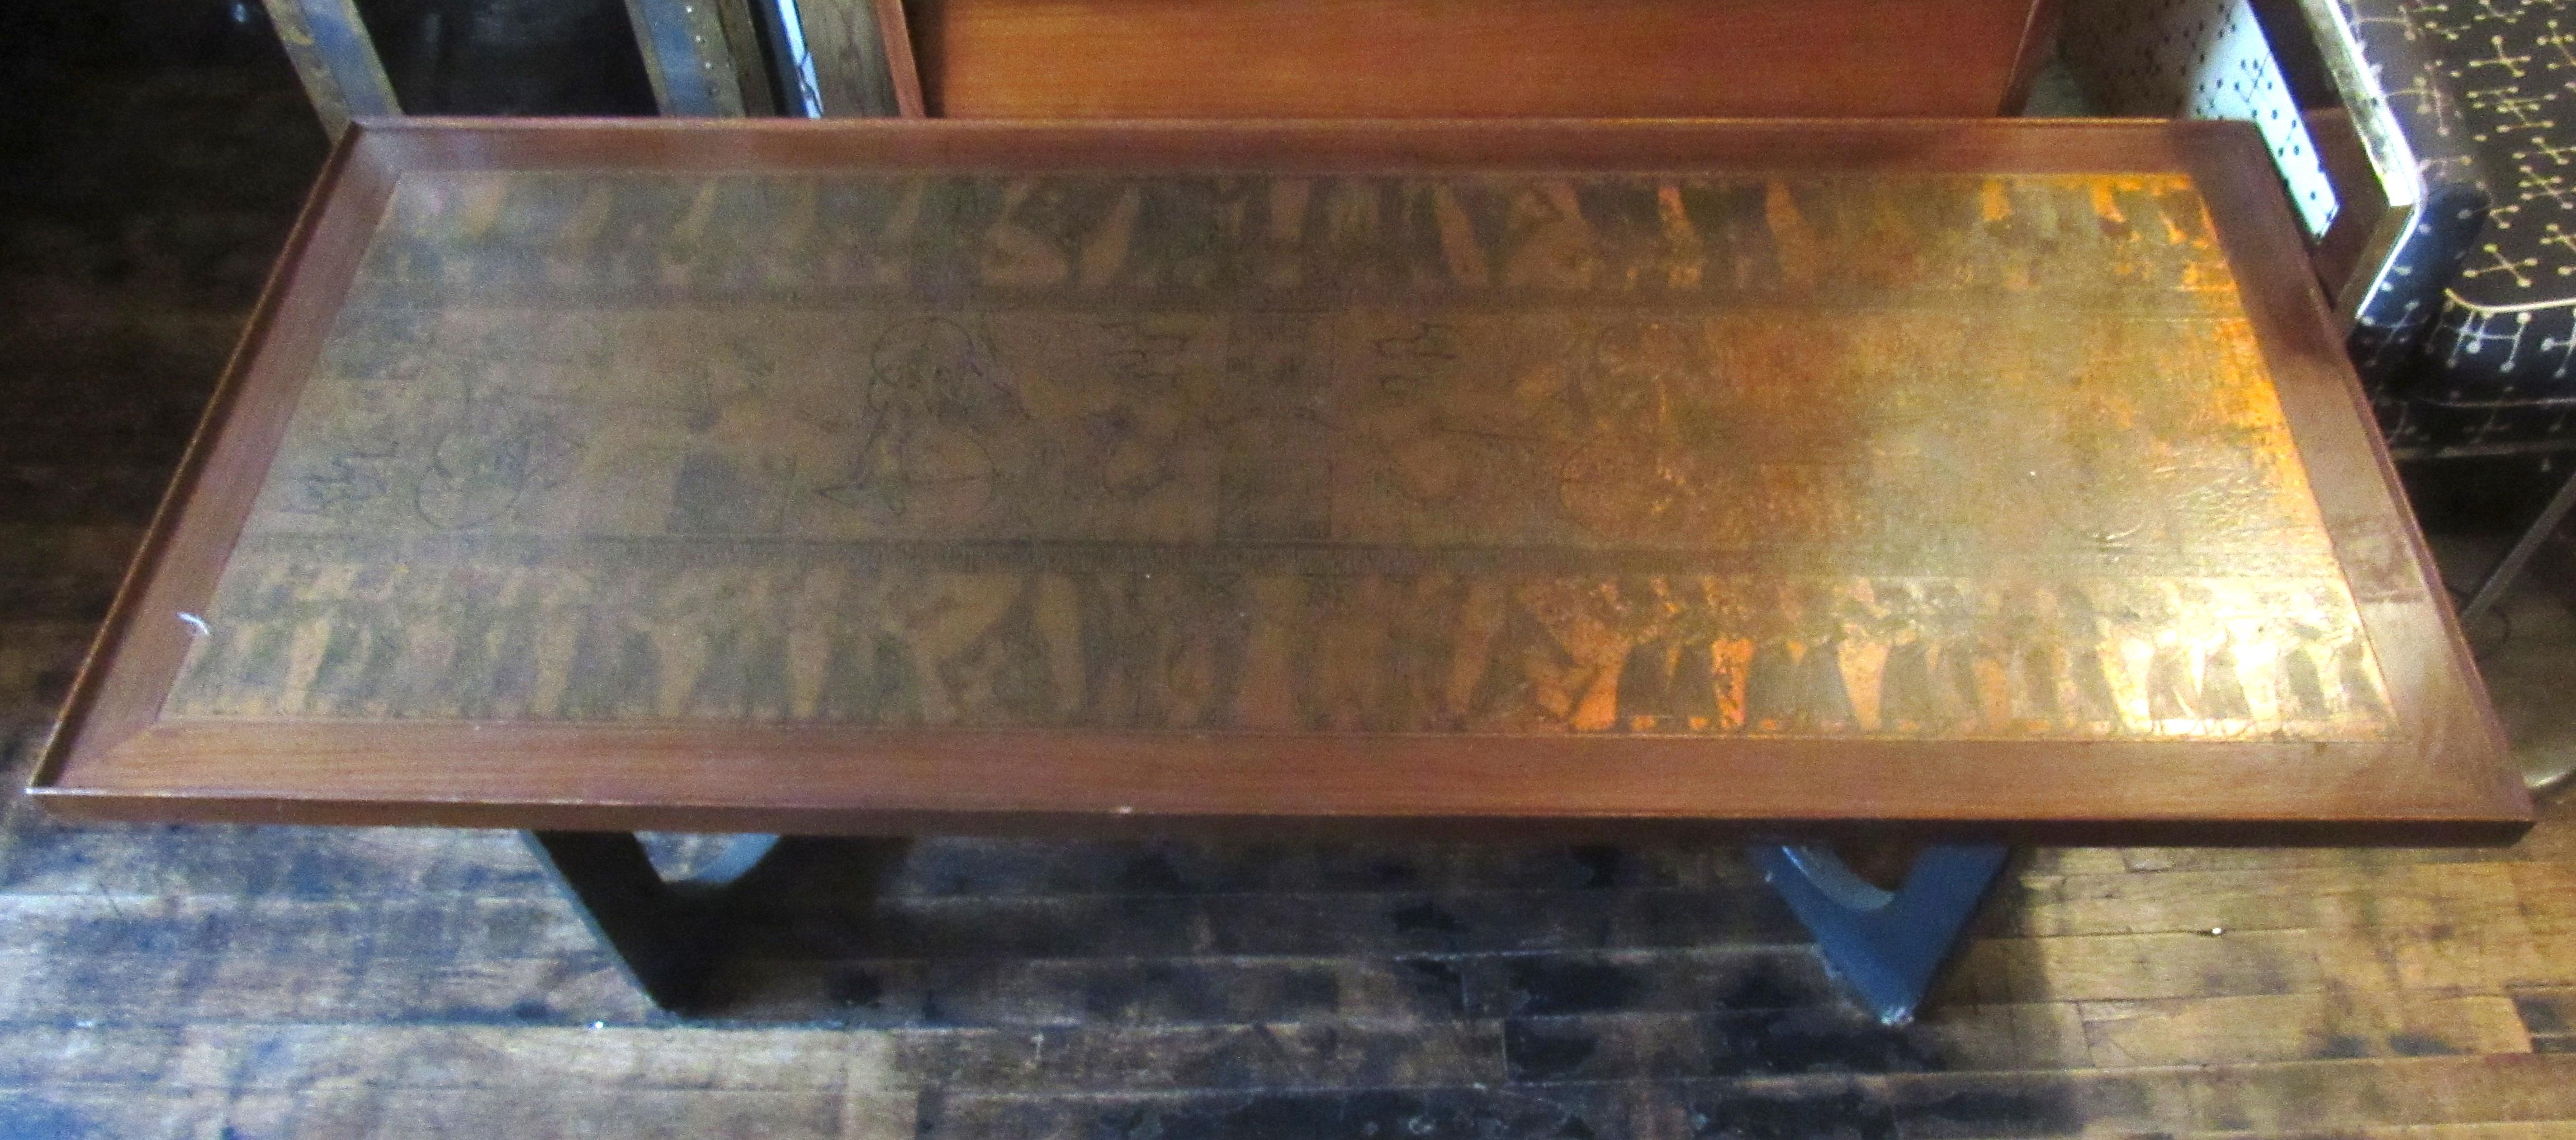 Magnifique table basse moderne vintage unique. Cette table basse en bois est ornée d'une incrustation en métal cuivré représentant de magnifiques hiéroglyphes de style égyptien. La table repose sur des pieds sculpturaux en bois noir. Cette table